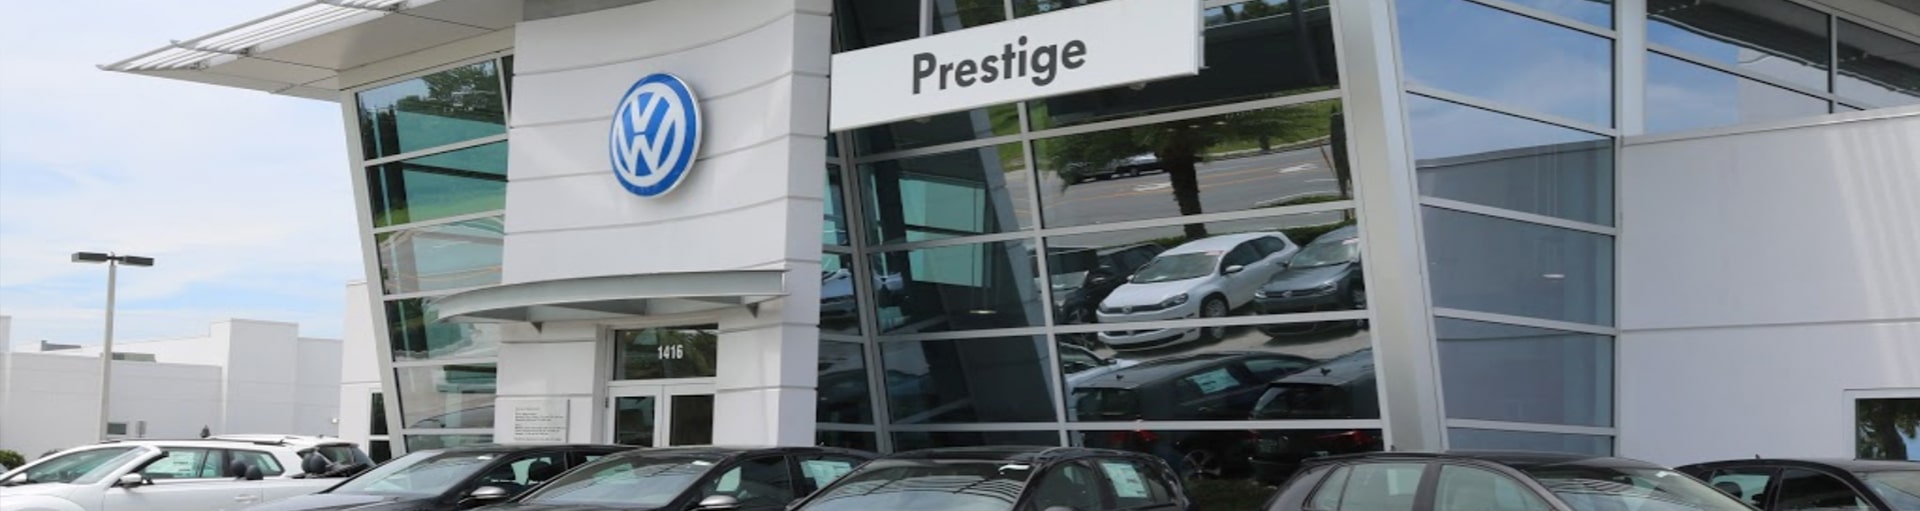 Prestige Volkswagen of Melbourne Brake Fluid Exchange